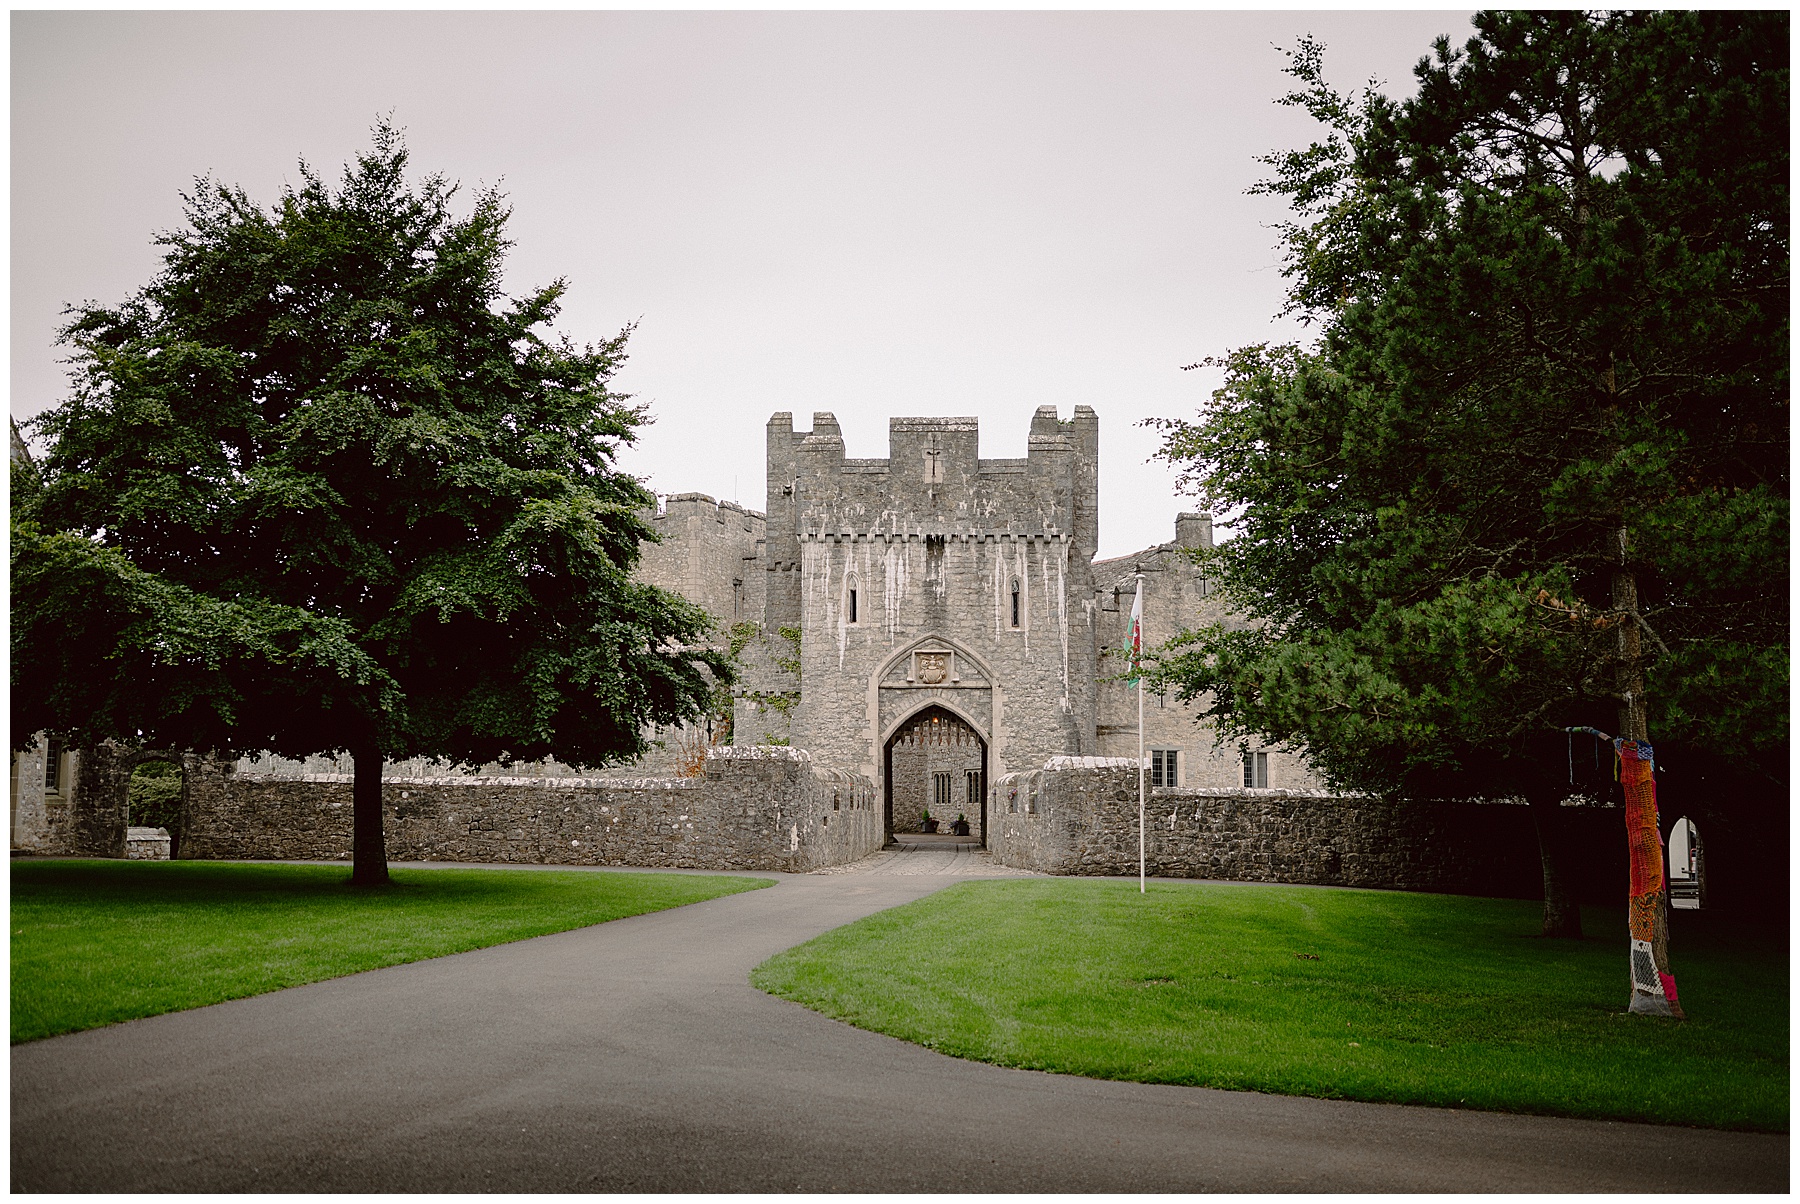 St Donat's Castle, South Wales